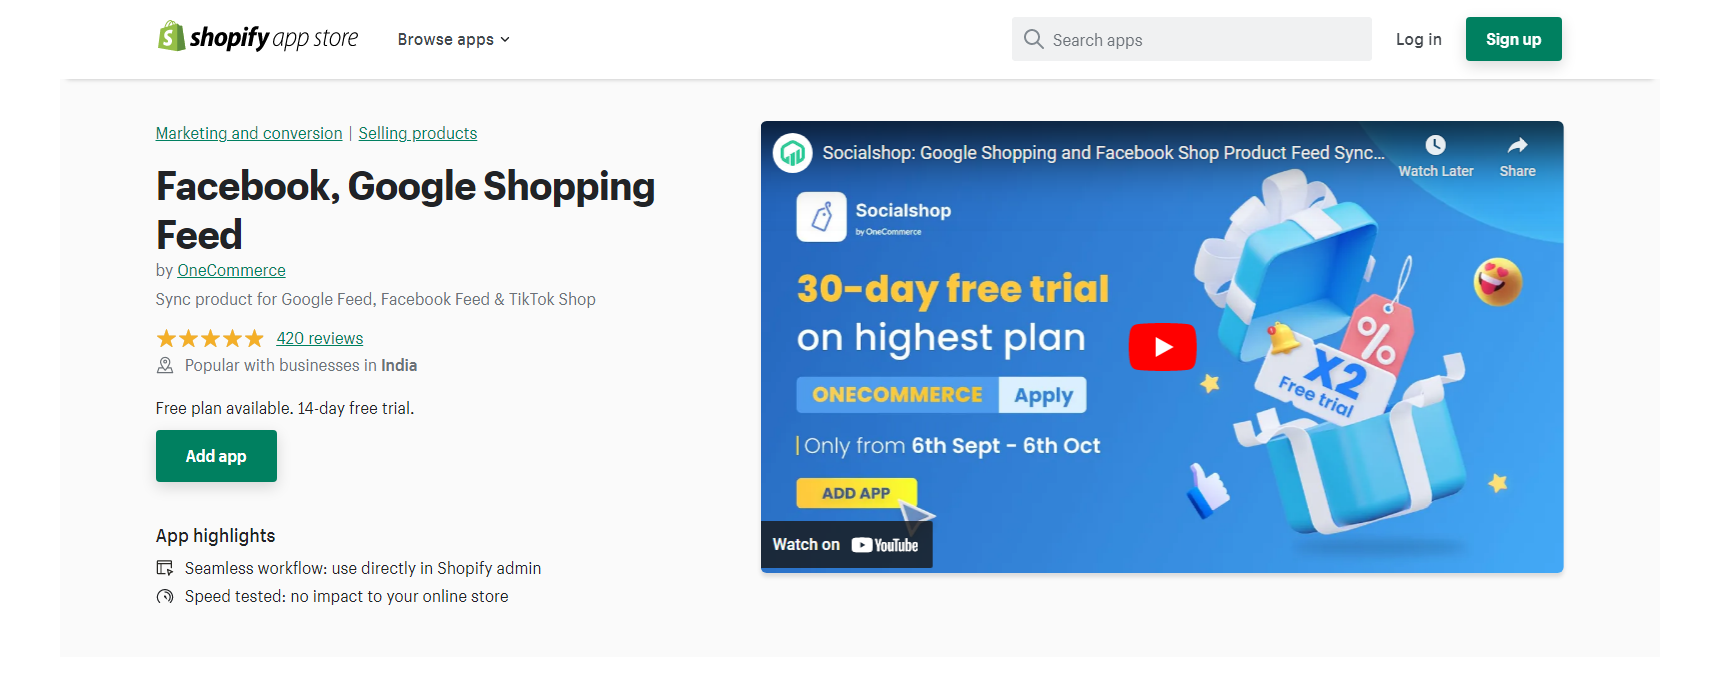 Facebook, Google Shopping - Facebook Shopify app